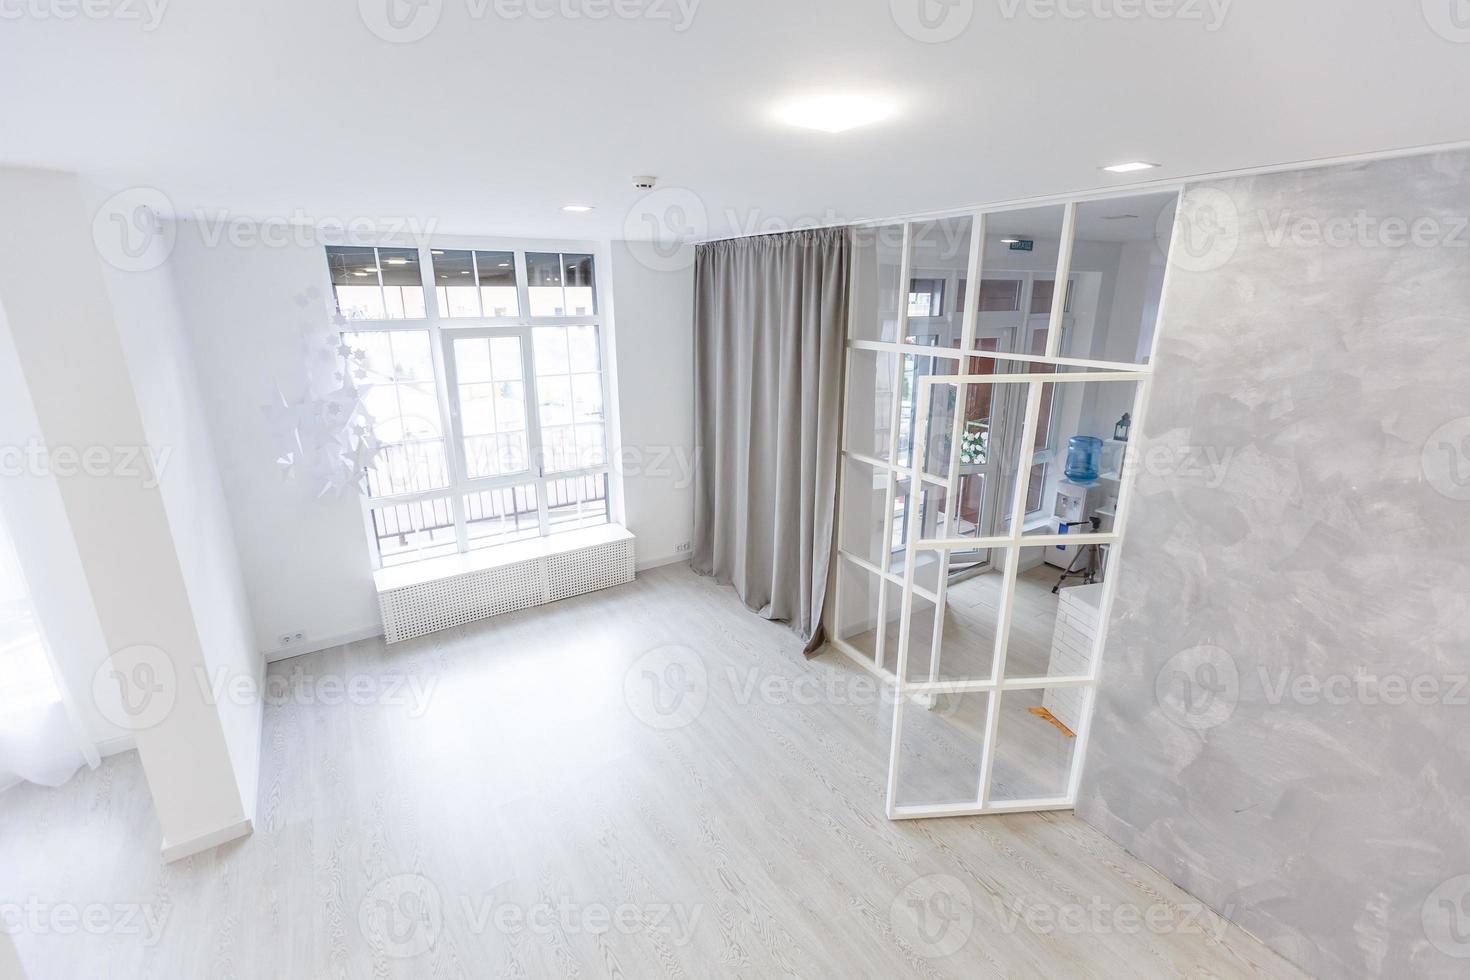 intérieur de la salle vide blanche avec parquet, fenêtre, porte. photo